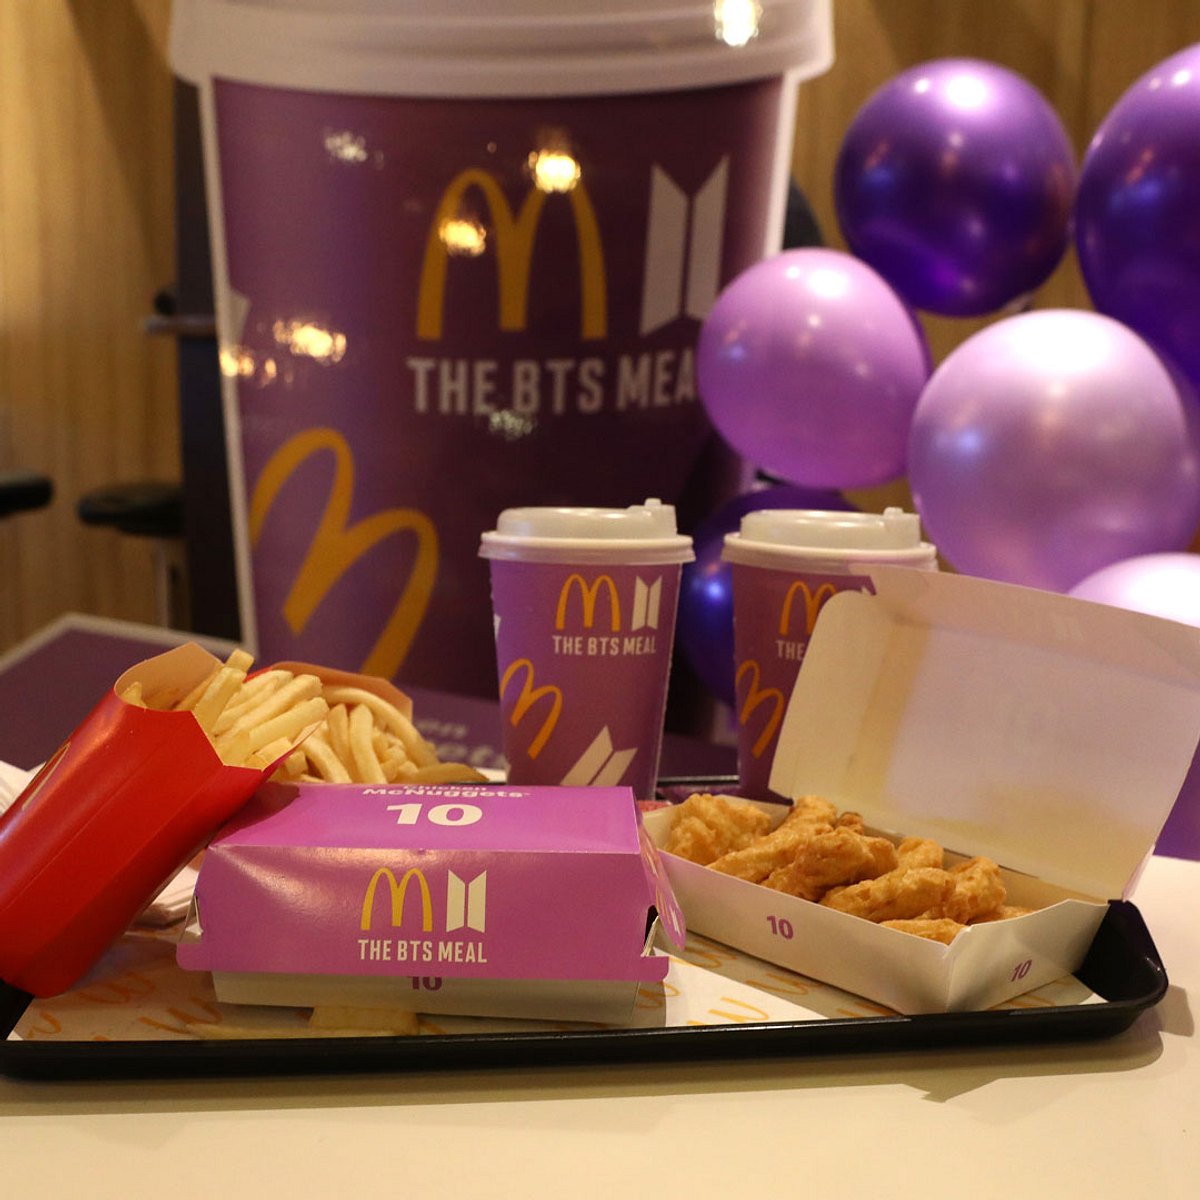 BTS gelingt verrückter McDonald's Rekord